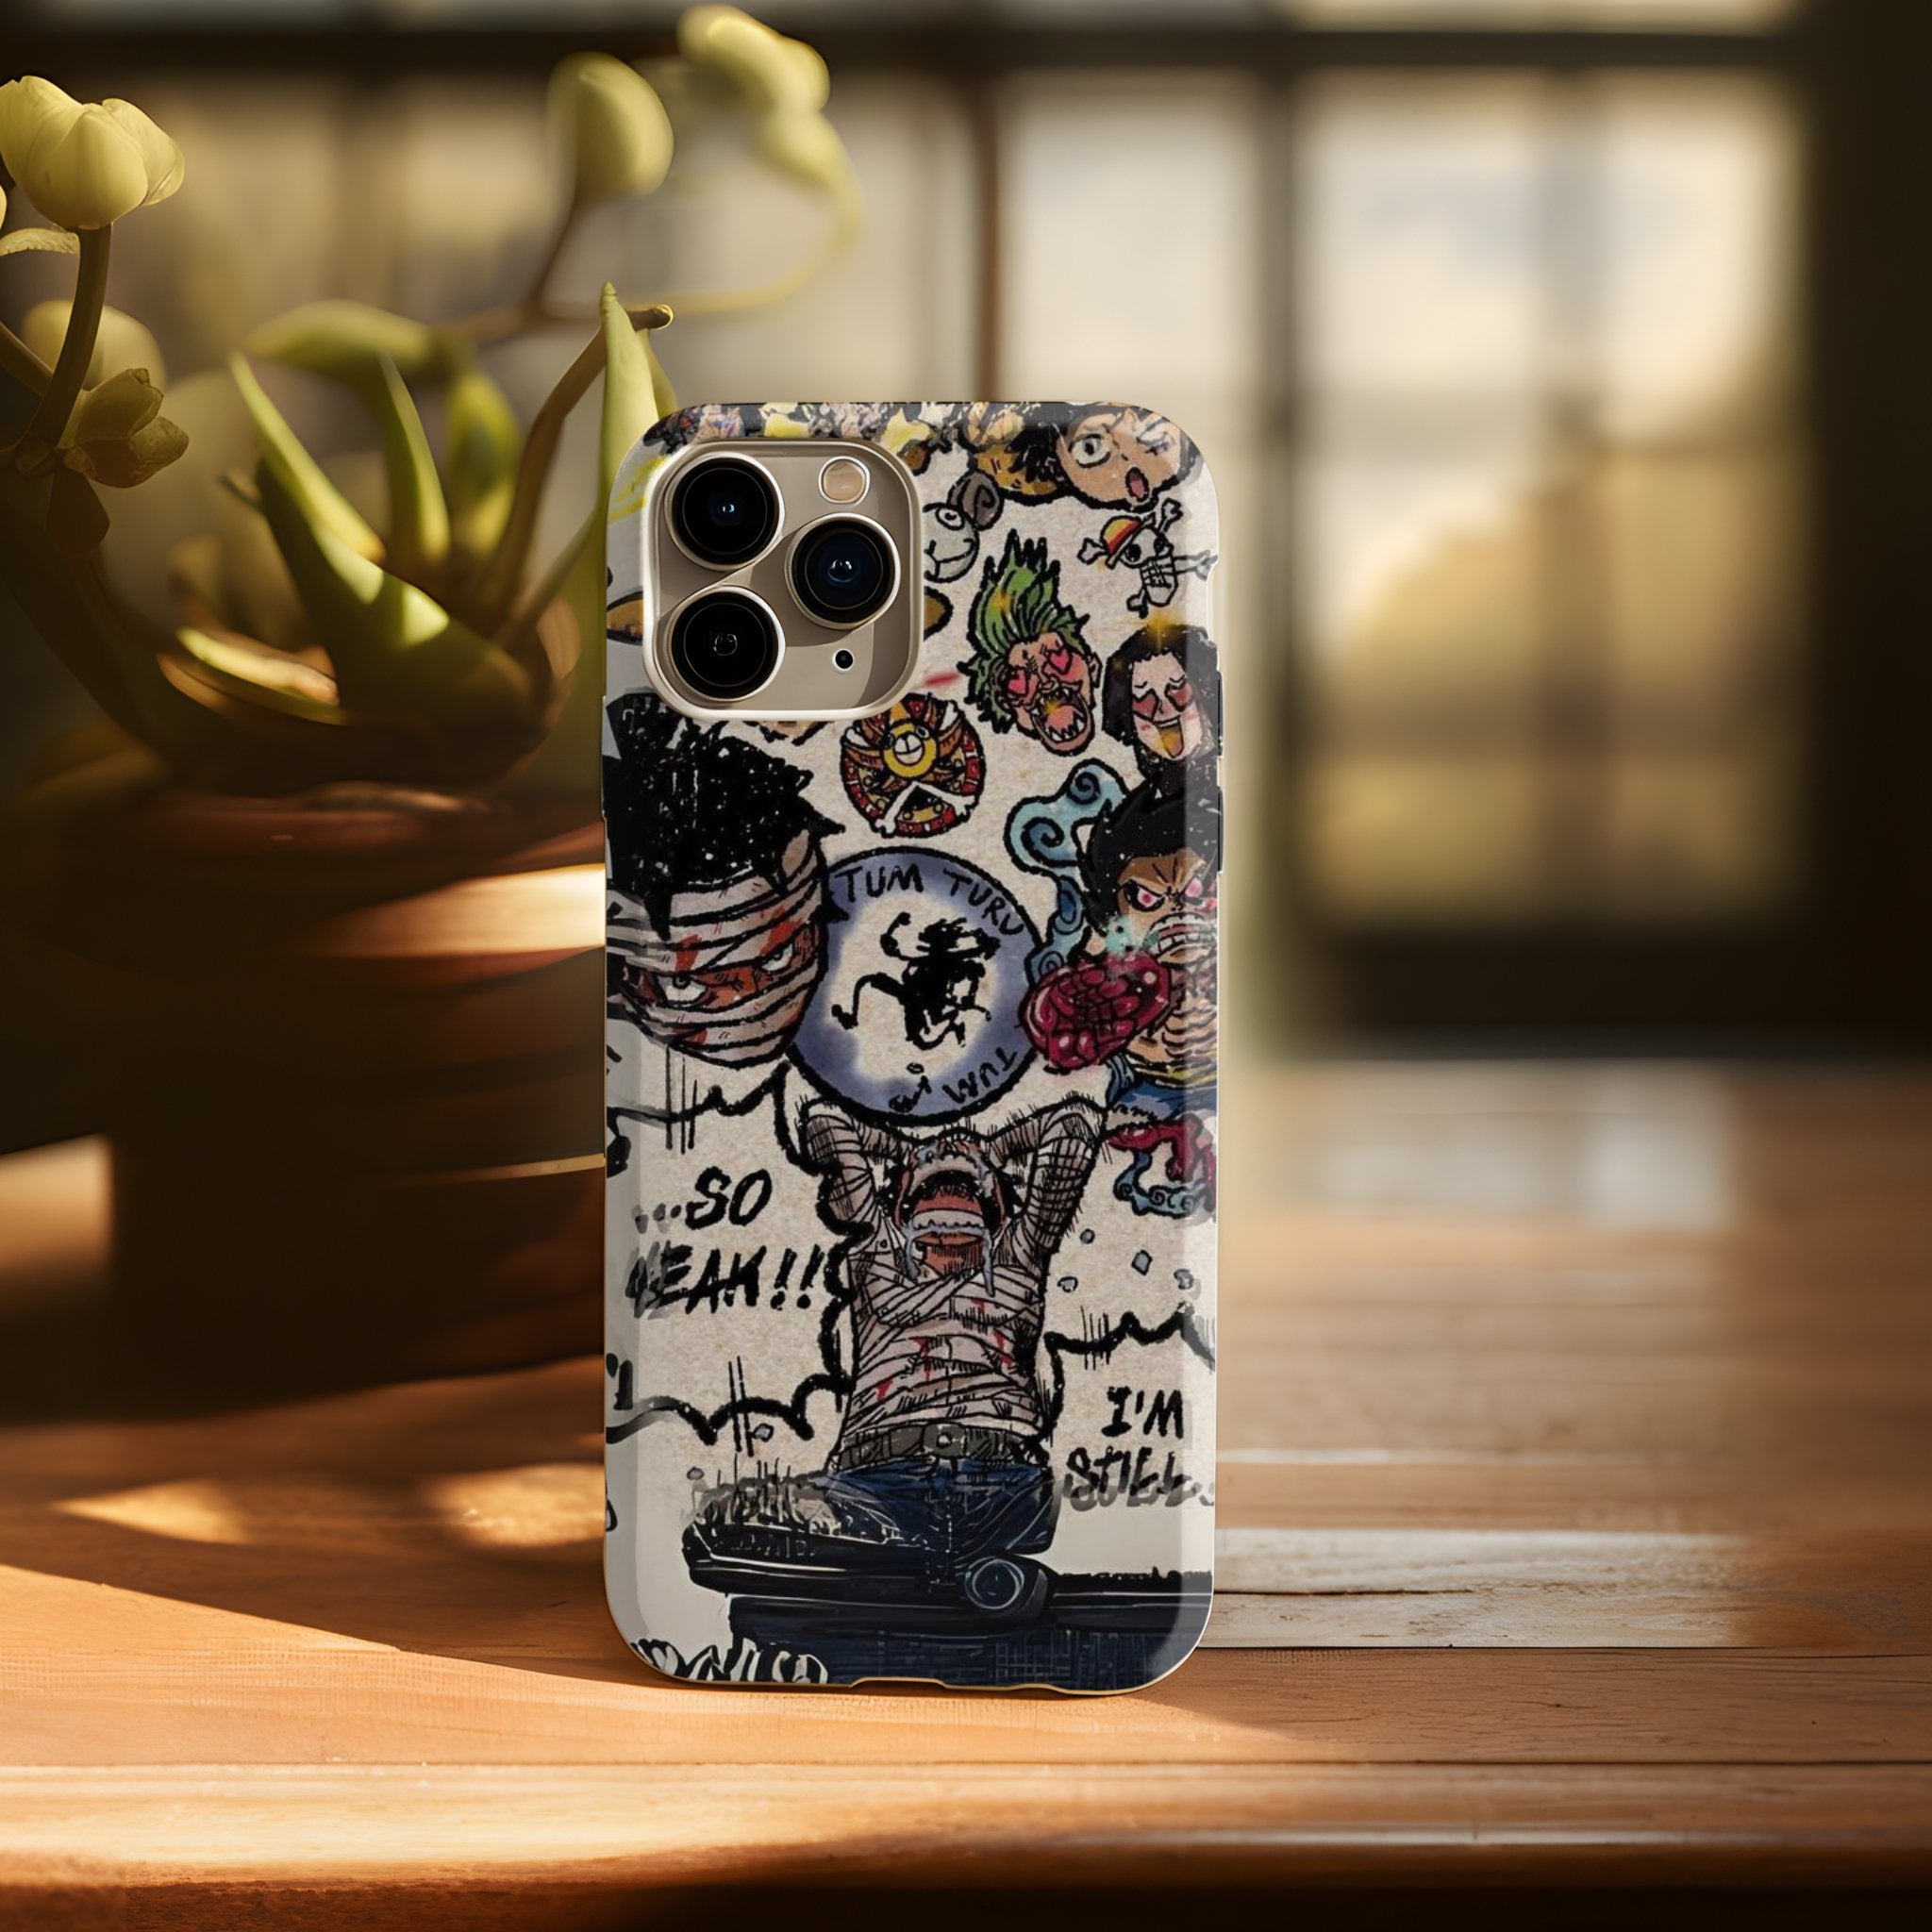 Luffy Paramount War iPhone Case By Behibrid - Behibrid